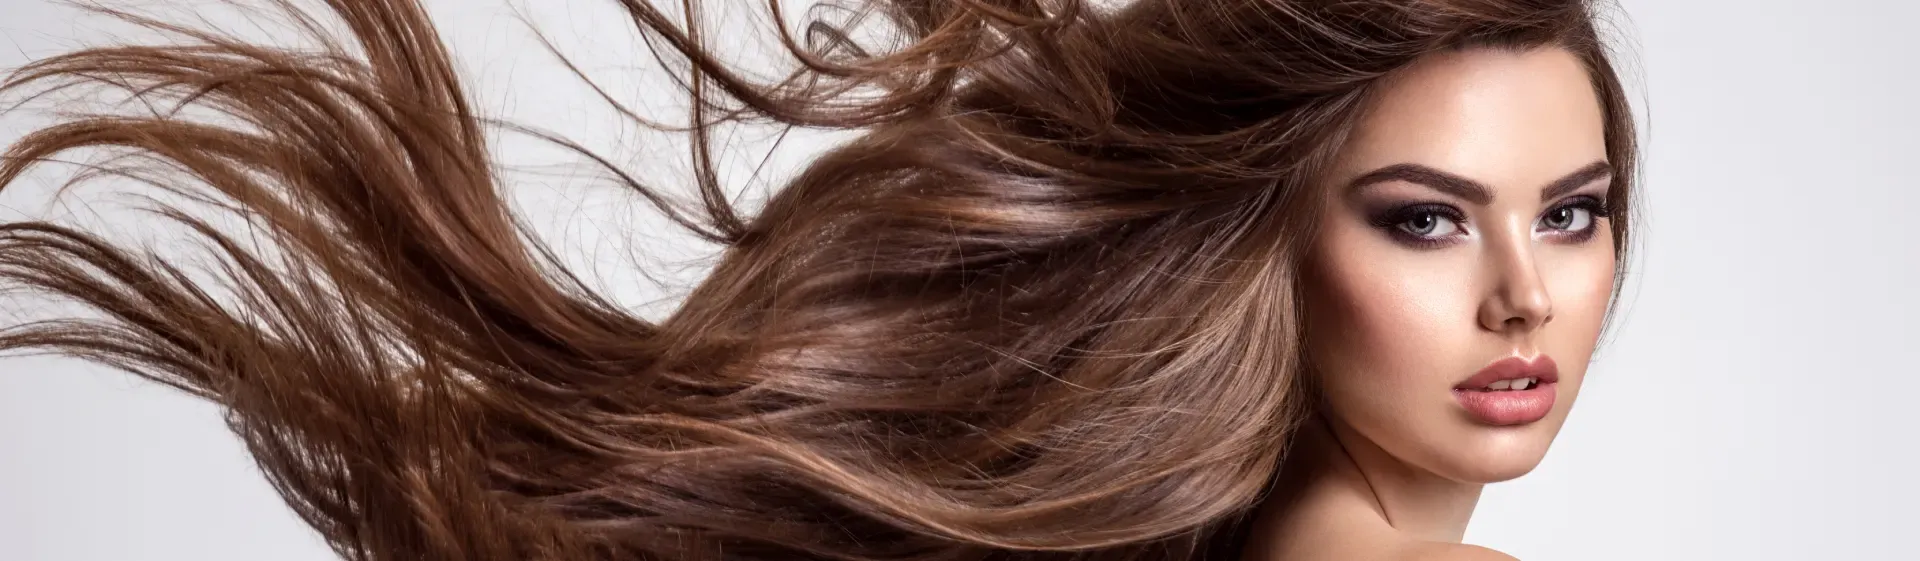 4 Dicas para deixar o cabelo cacheado com brilho e sedoso – Girass